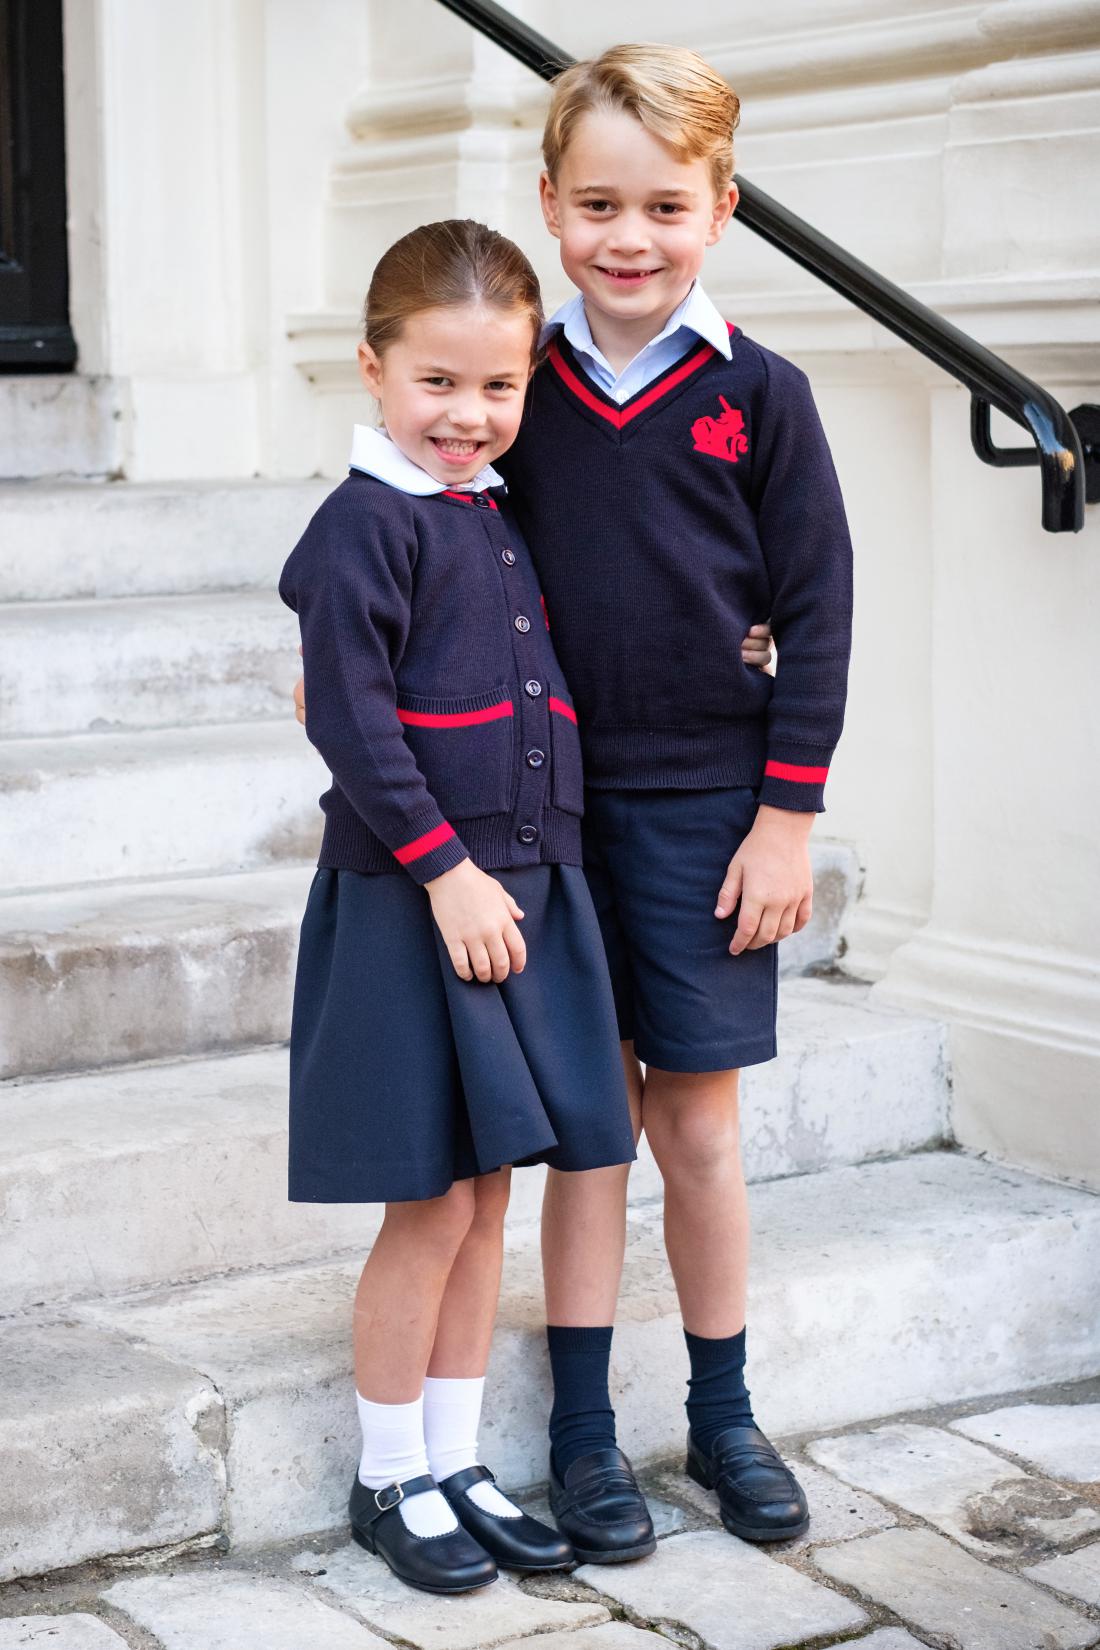 Princesa Charlotte prvič v uniformi v šolo